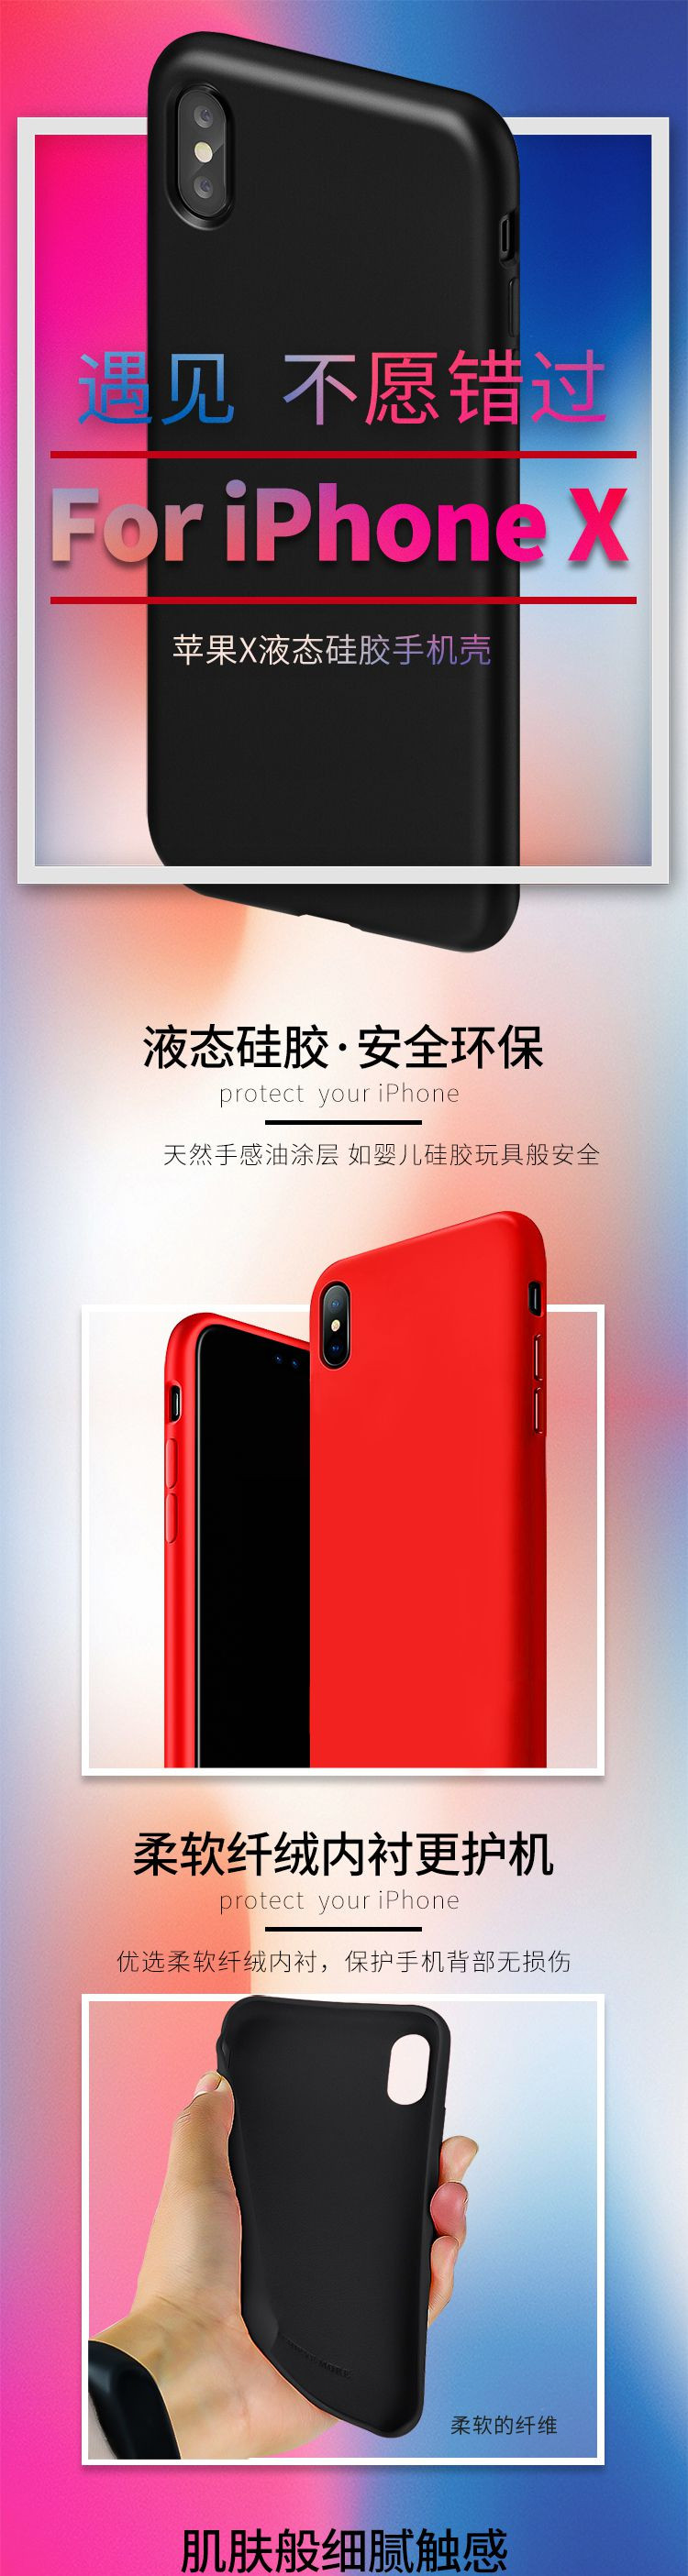 阿奇猫苹果x液态硅胶手机壳iphoneX 红色、黑色多色可选